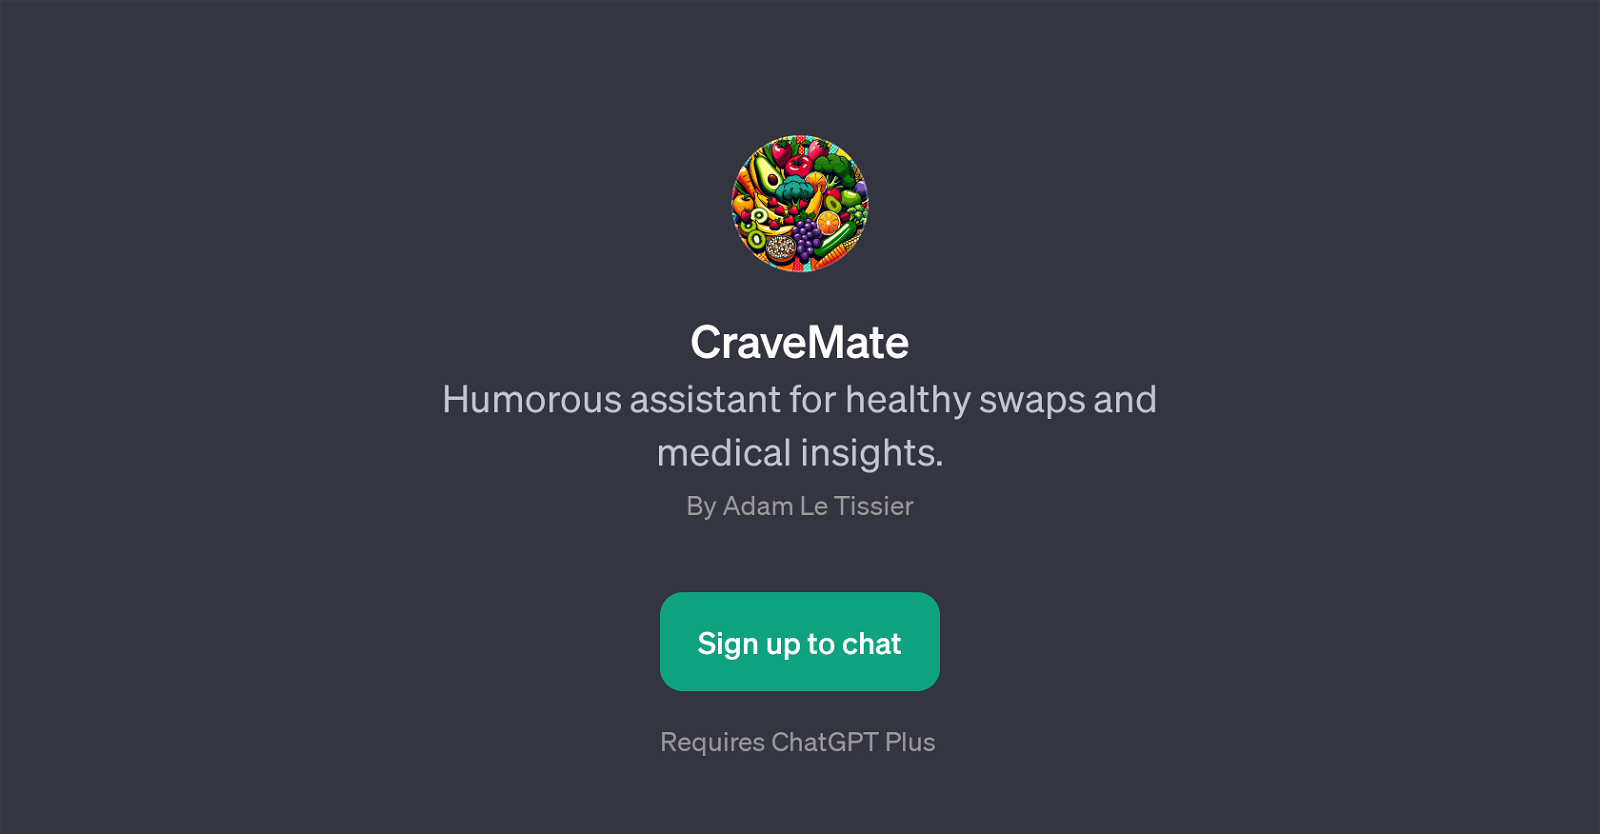 CraveMate website